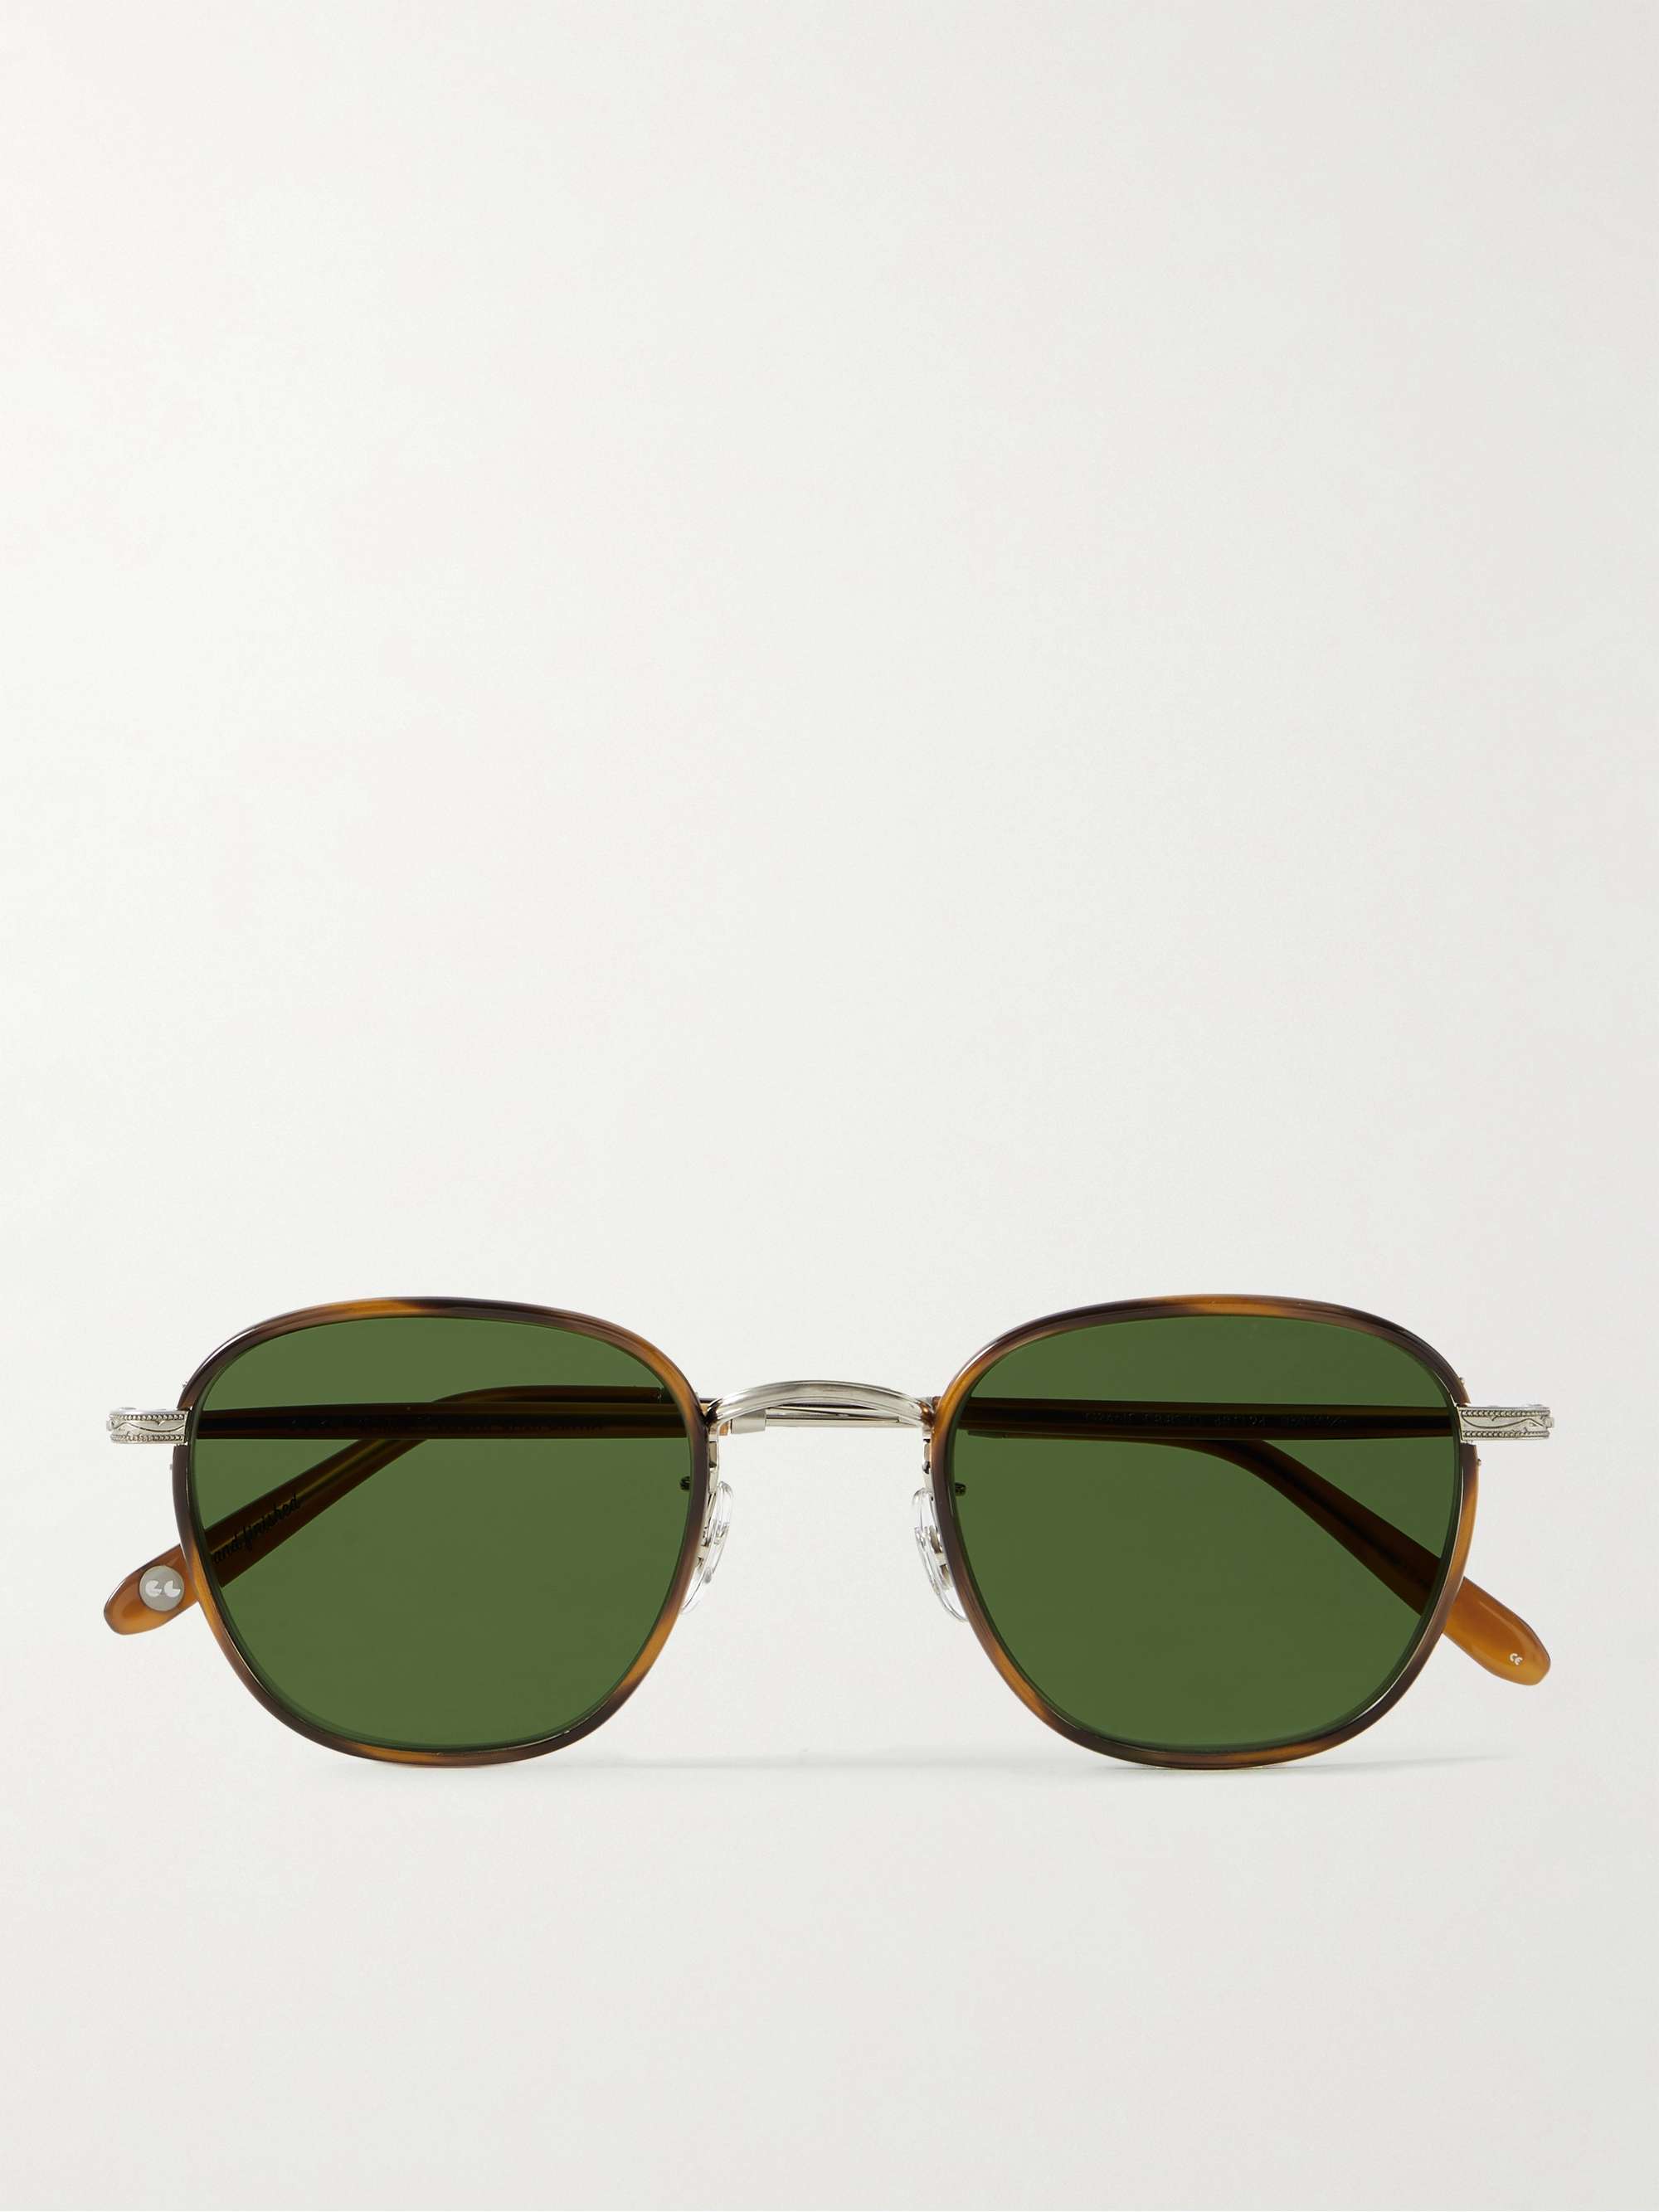 GARRETT LEIGHT CALIFORNIA OPTICAL Grant D-Frame Tortoiseshell Acetate and Stainless Steel Sunglasses